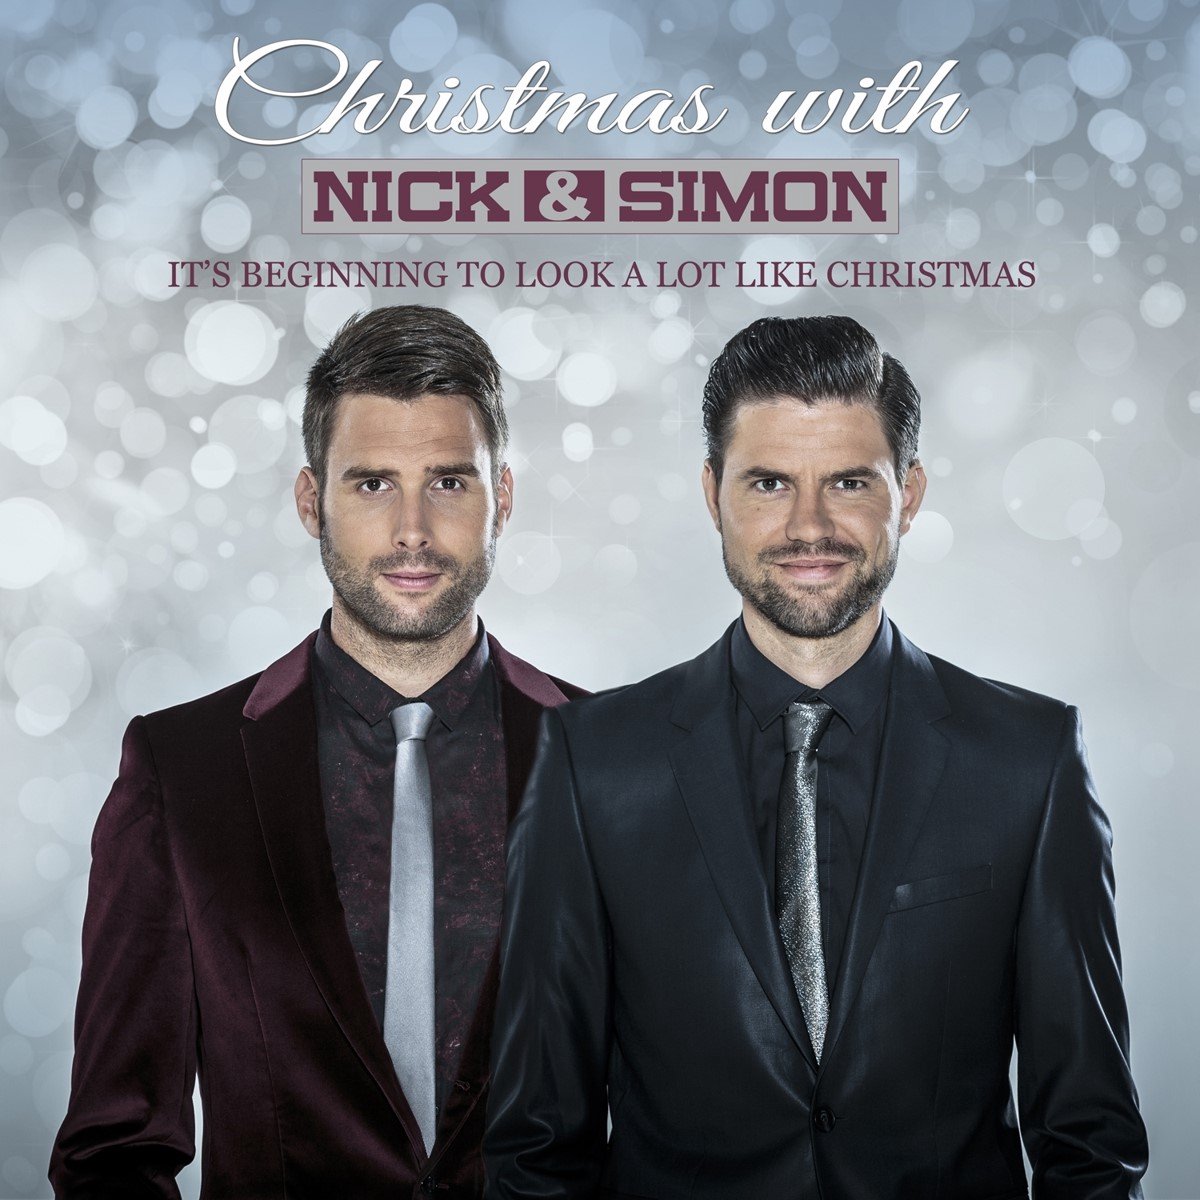 Nick & Simon - Christmas With (It's beginning to look a lot like Christmas) (2 CD) - Nick & Simon